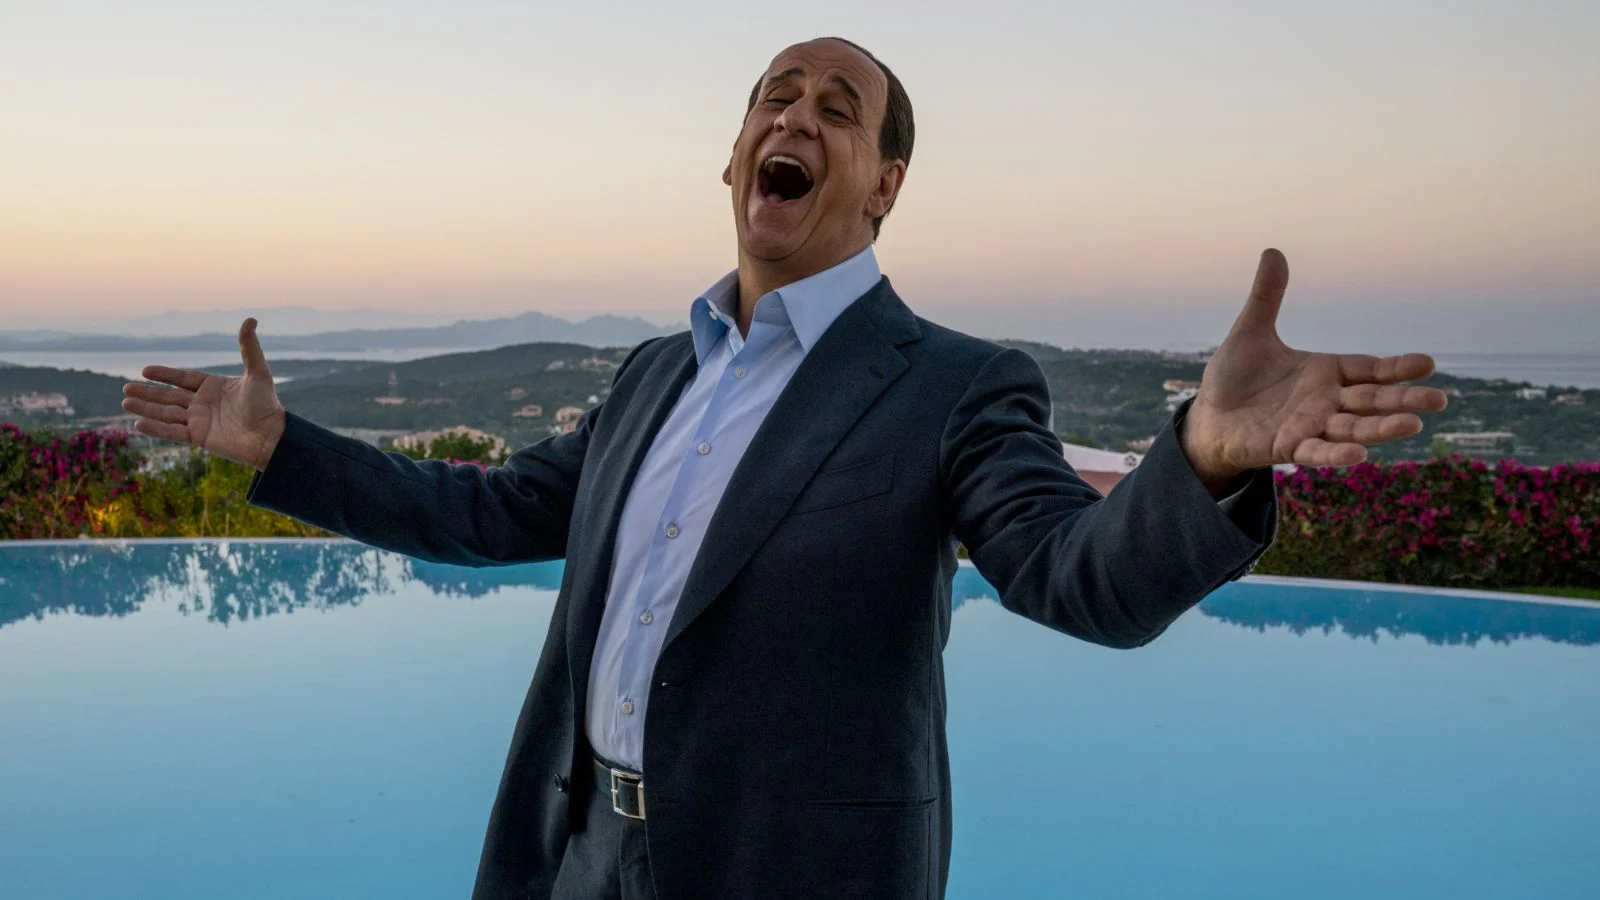 Scopri di più sull'articolo LORO, l’occhio poetico di Sorrentino su Berlusconi